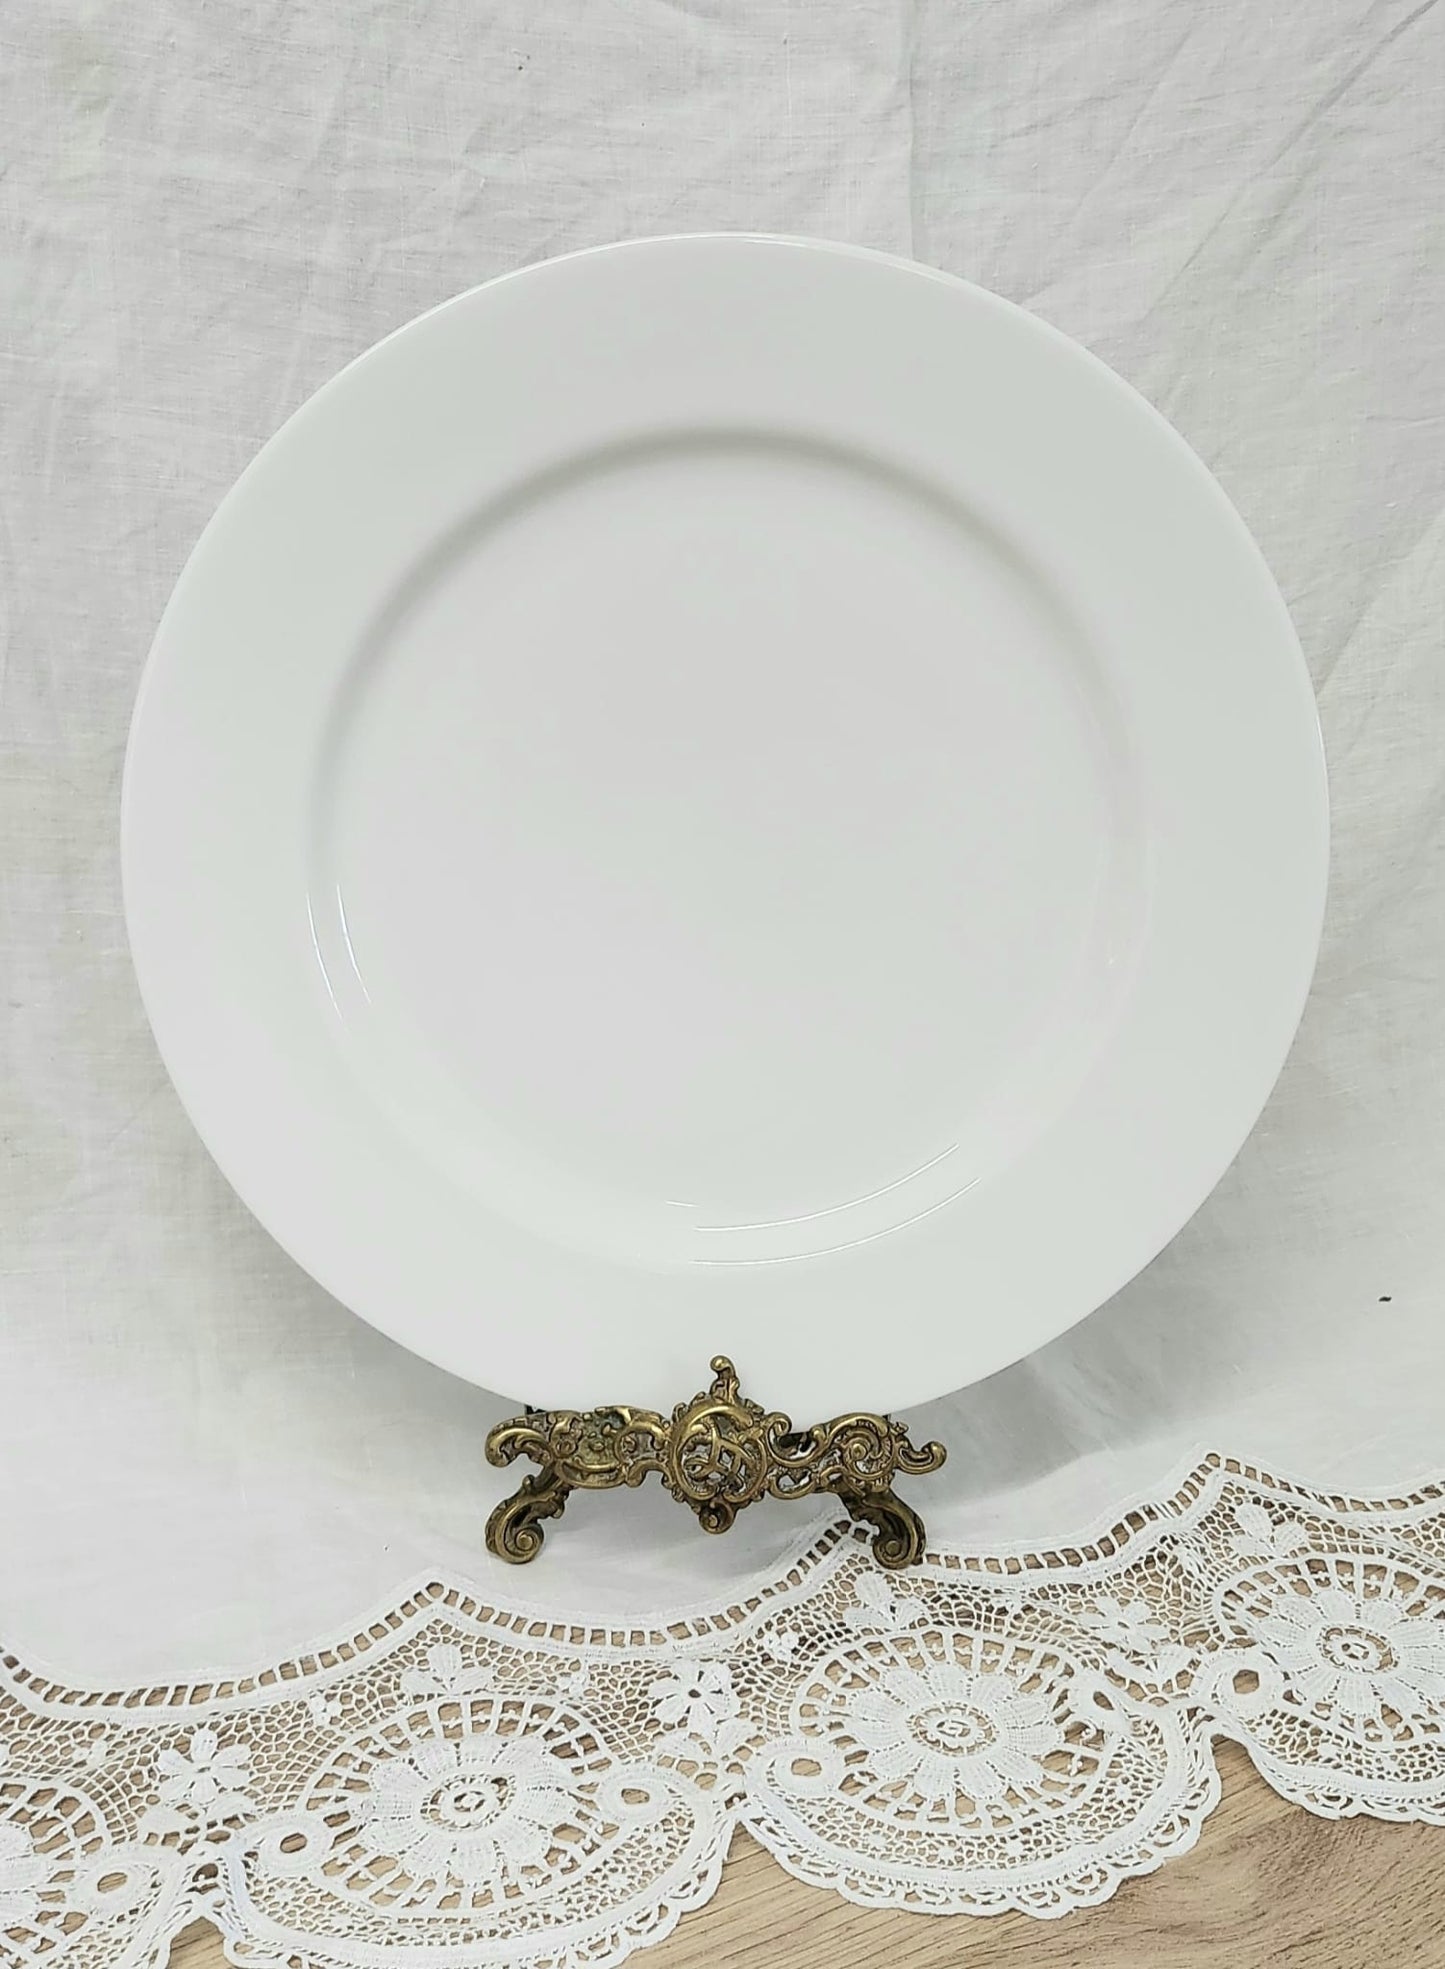 Royal Worcester fine porcelain big dinner plate 27cm